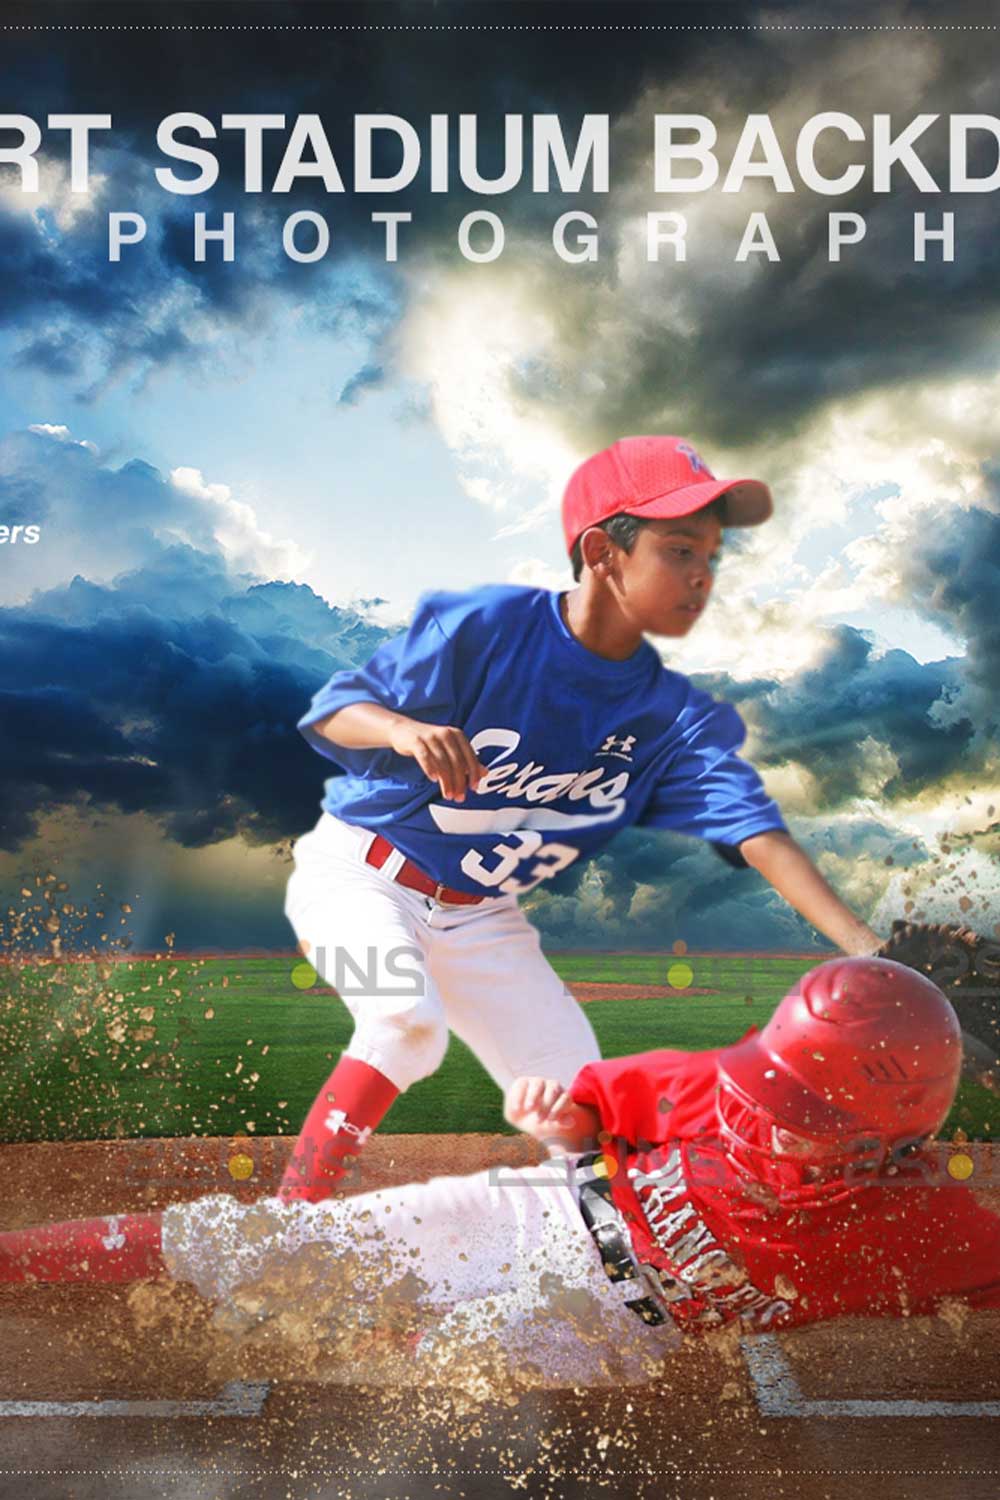 Baseball Stylish Backdrop Sports Digital Background Pinterest Image.